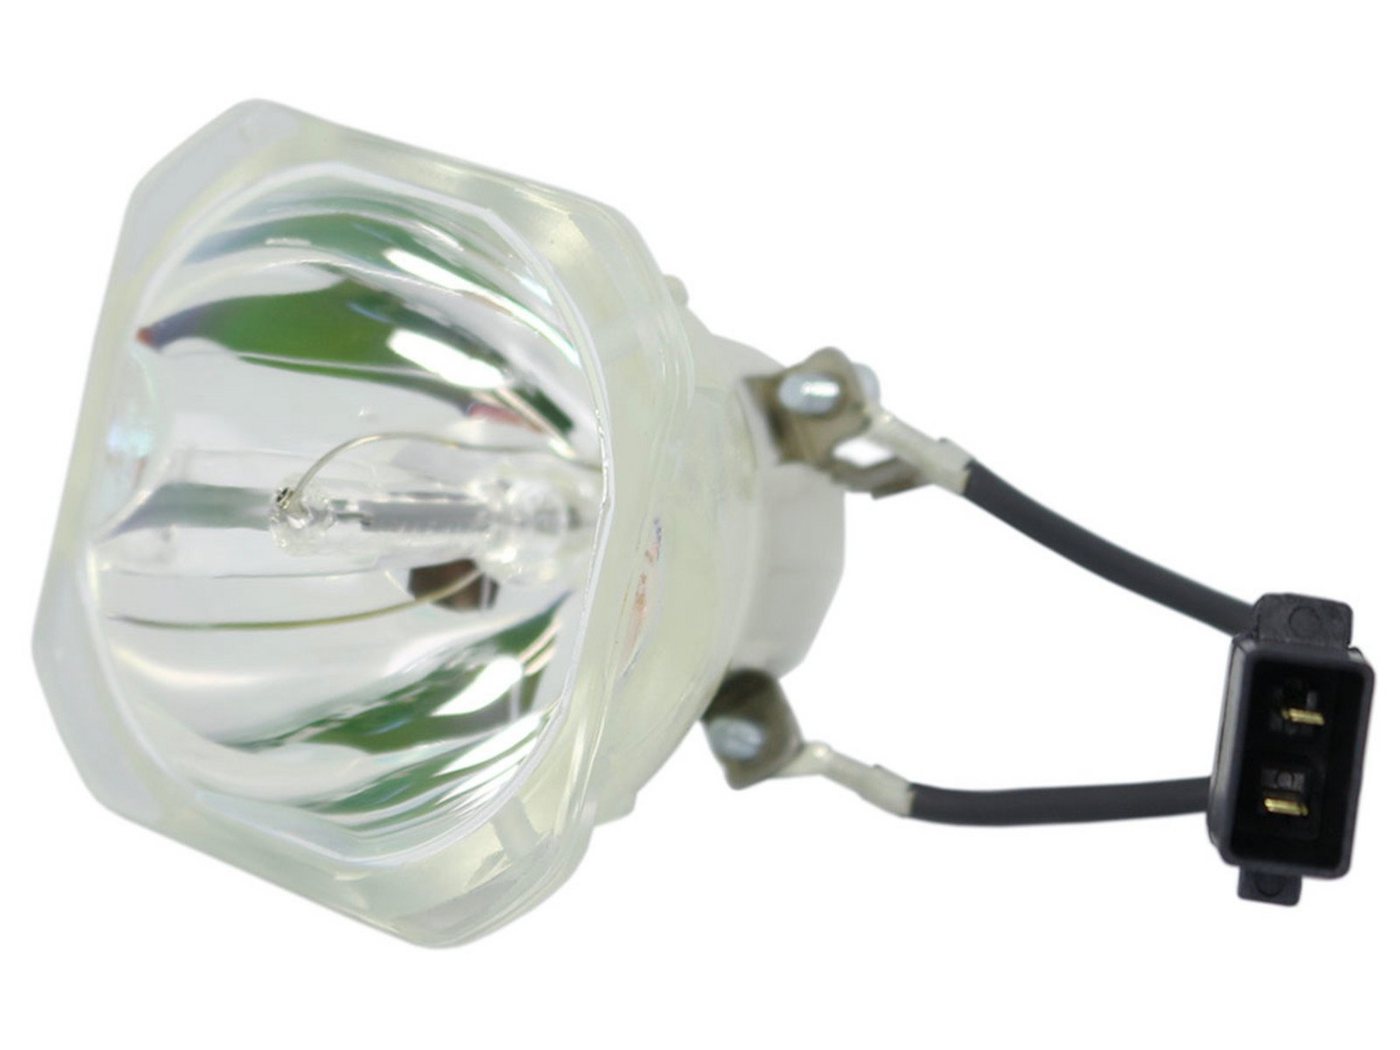 azurano Beamerlampe, 1-St., für EPSON ELPLP85, V13H010L85, preiswert, umwelt- & ressourcenschonend von azurano